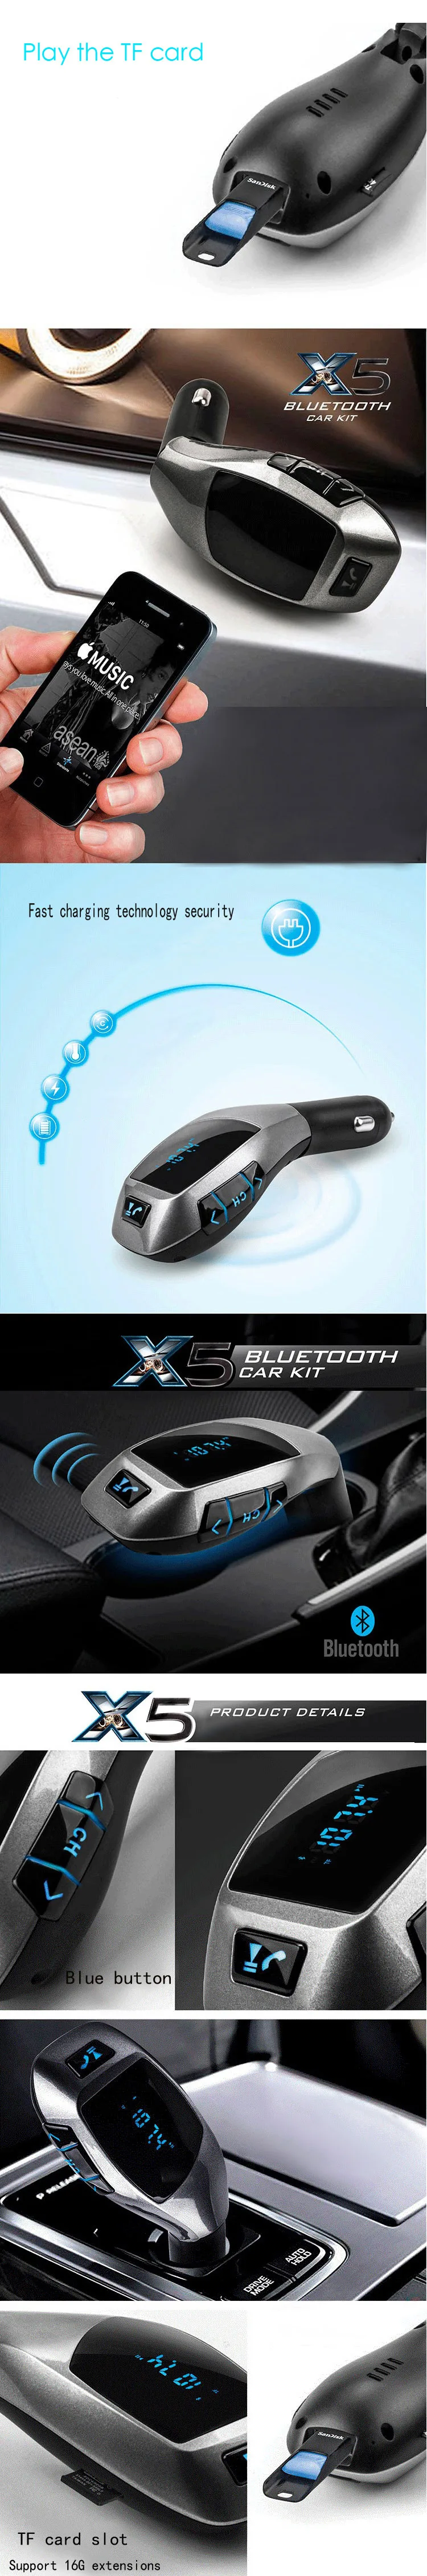 BGreen автомобильное использование Bluetooth MP3 плеер Поддержка SD карты U диск FM радио телефонный звонок с USB микрофоном